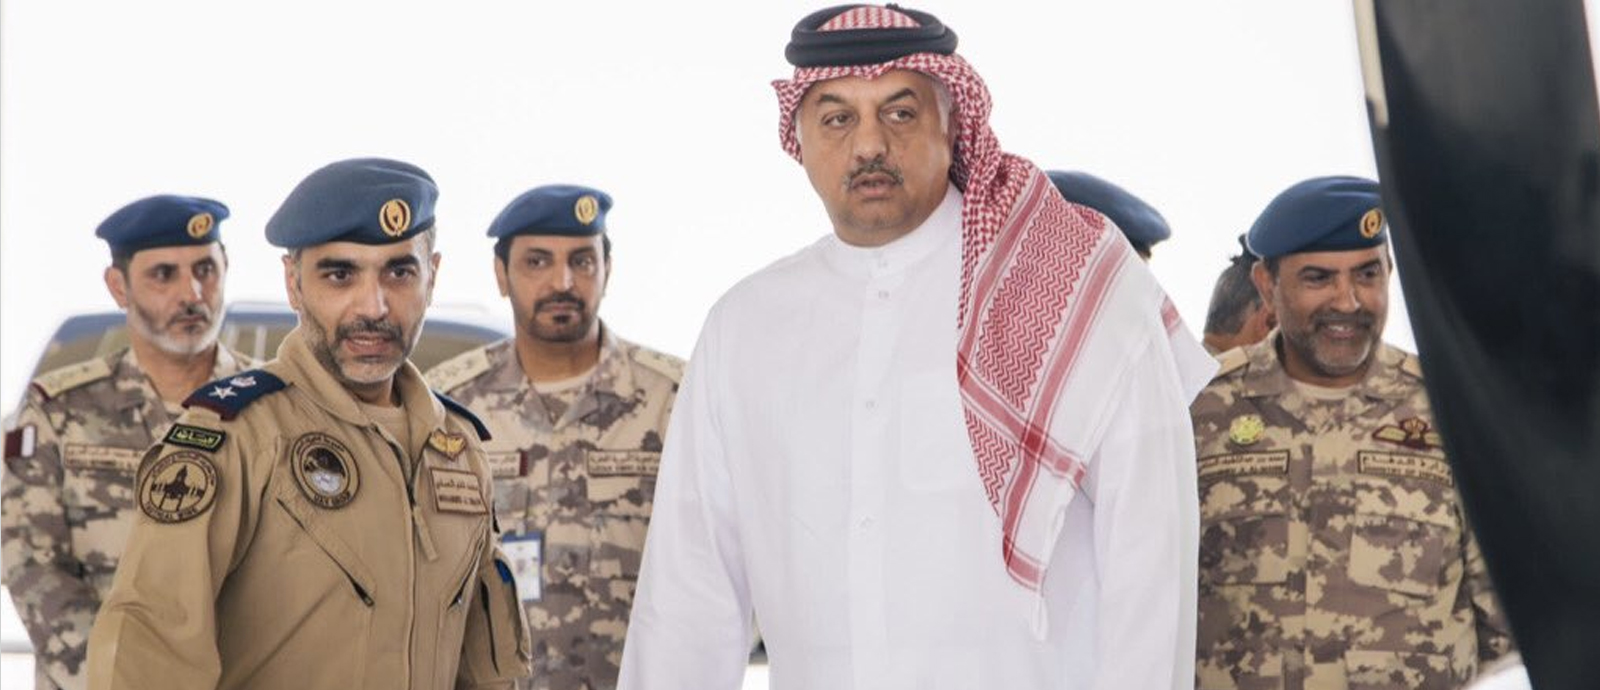 سعادة الدكتور خالد بن محمد العطية نائب رئيس مجلس الوزراء وزير الدولة لشؤون الدفاع